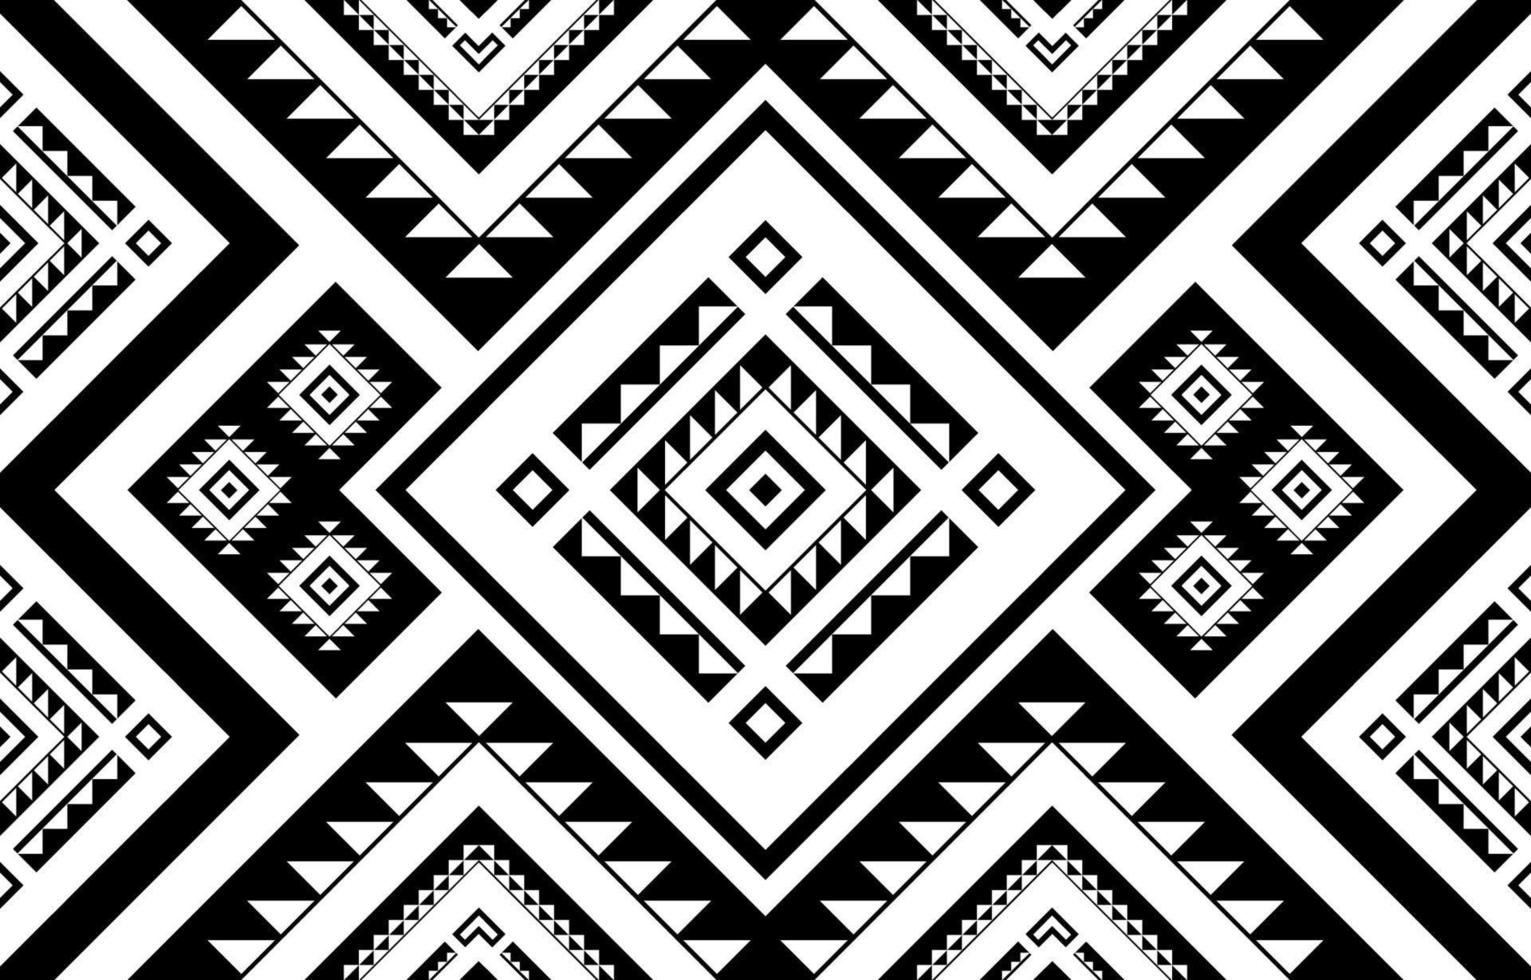 geometriska etniska sömlösa mönster. traditionell inhemsk stil. design för bakgrund, illustration, tapeter, tyg, kläder, matta, broderi vektor